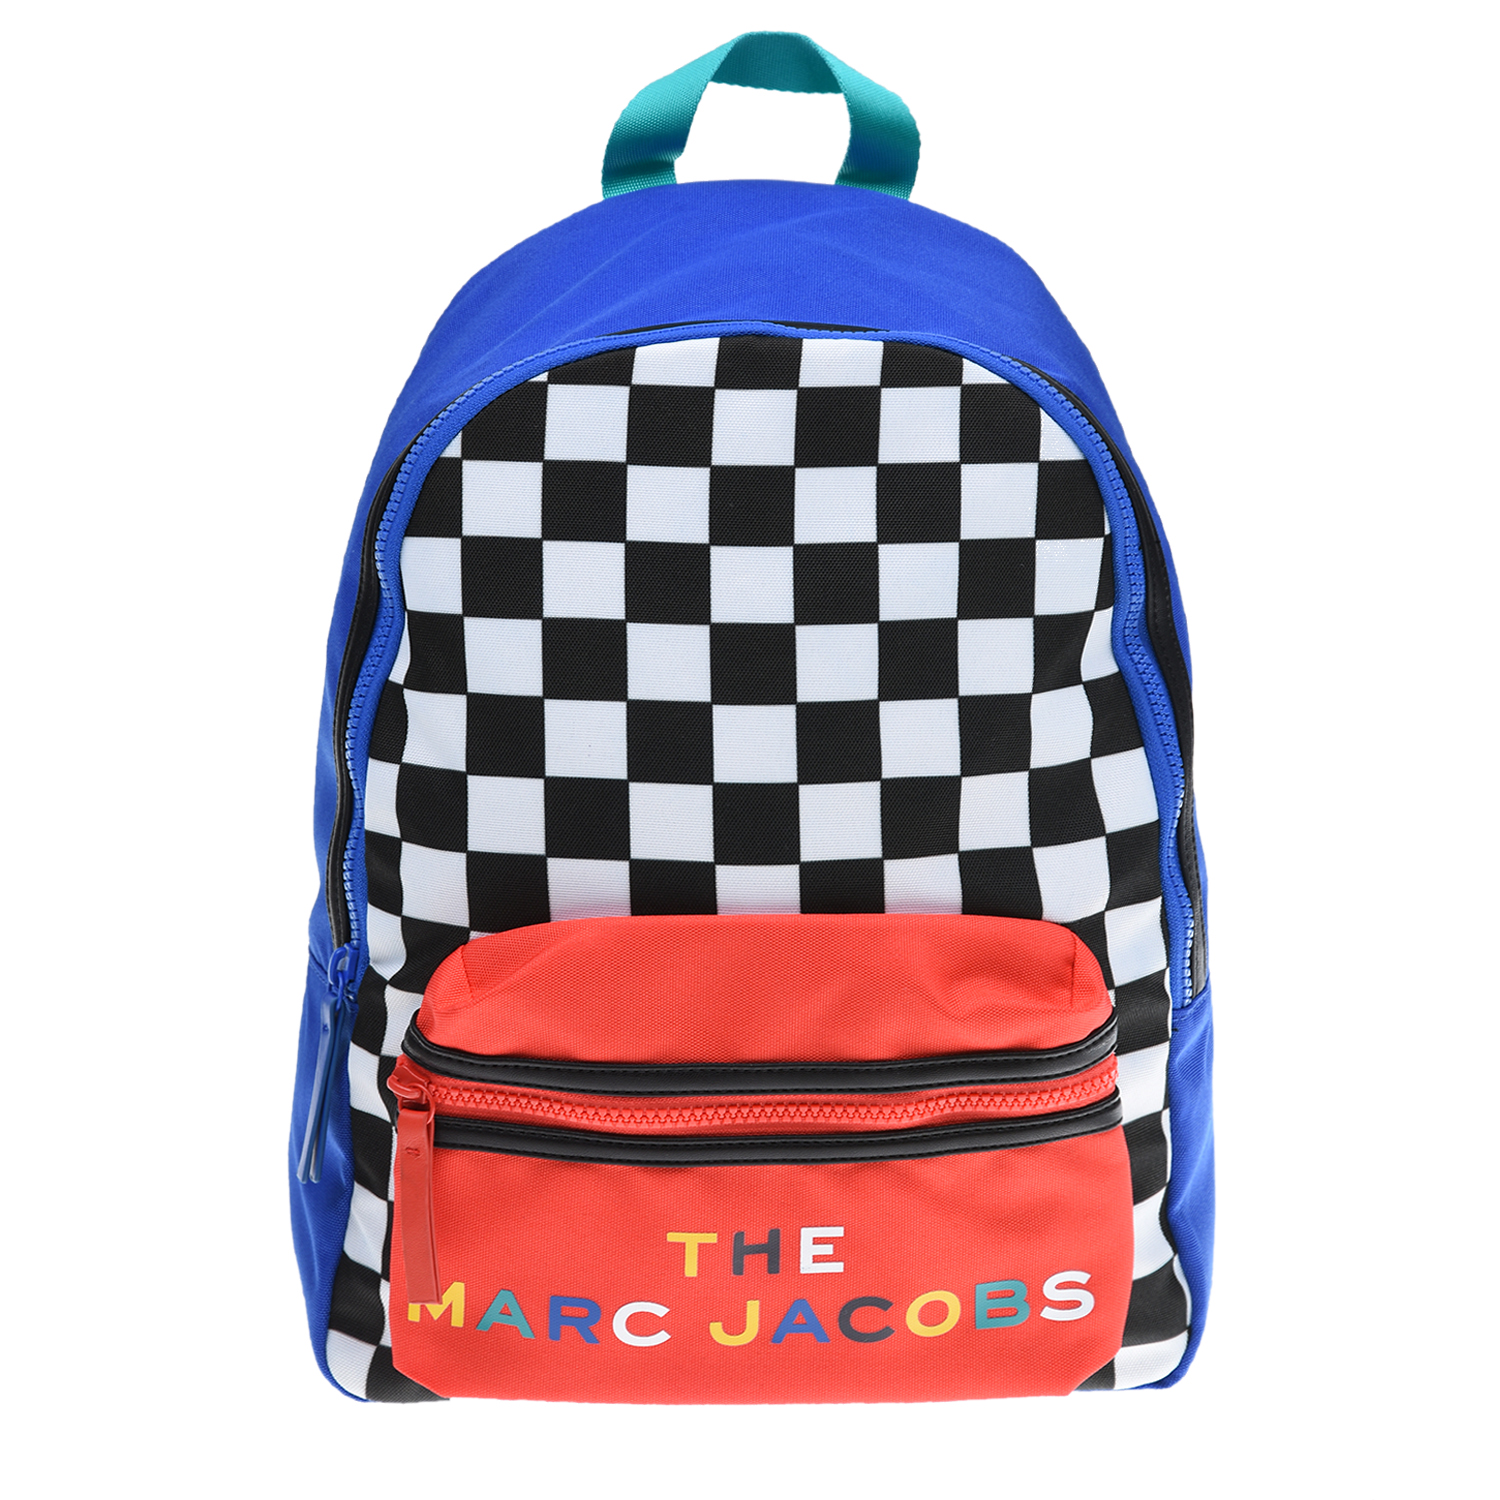 Рюкзак с шахматным принтом 40х12х28 см Little Marc Jacobs детский, размер unica, цвет мультиколор - фото 1